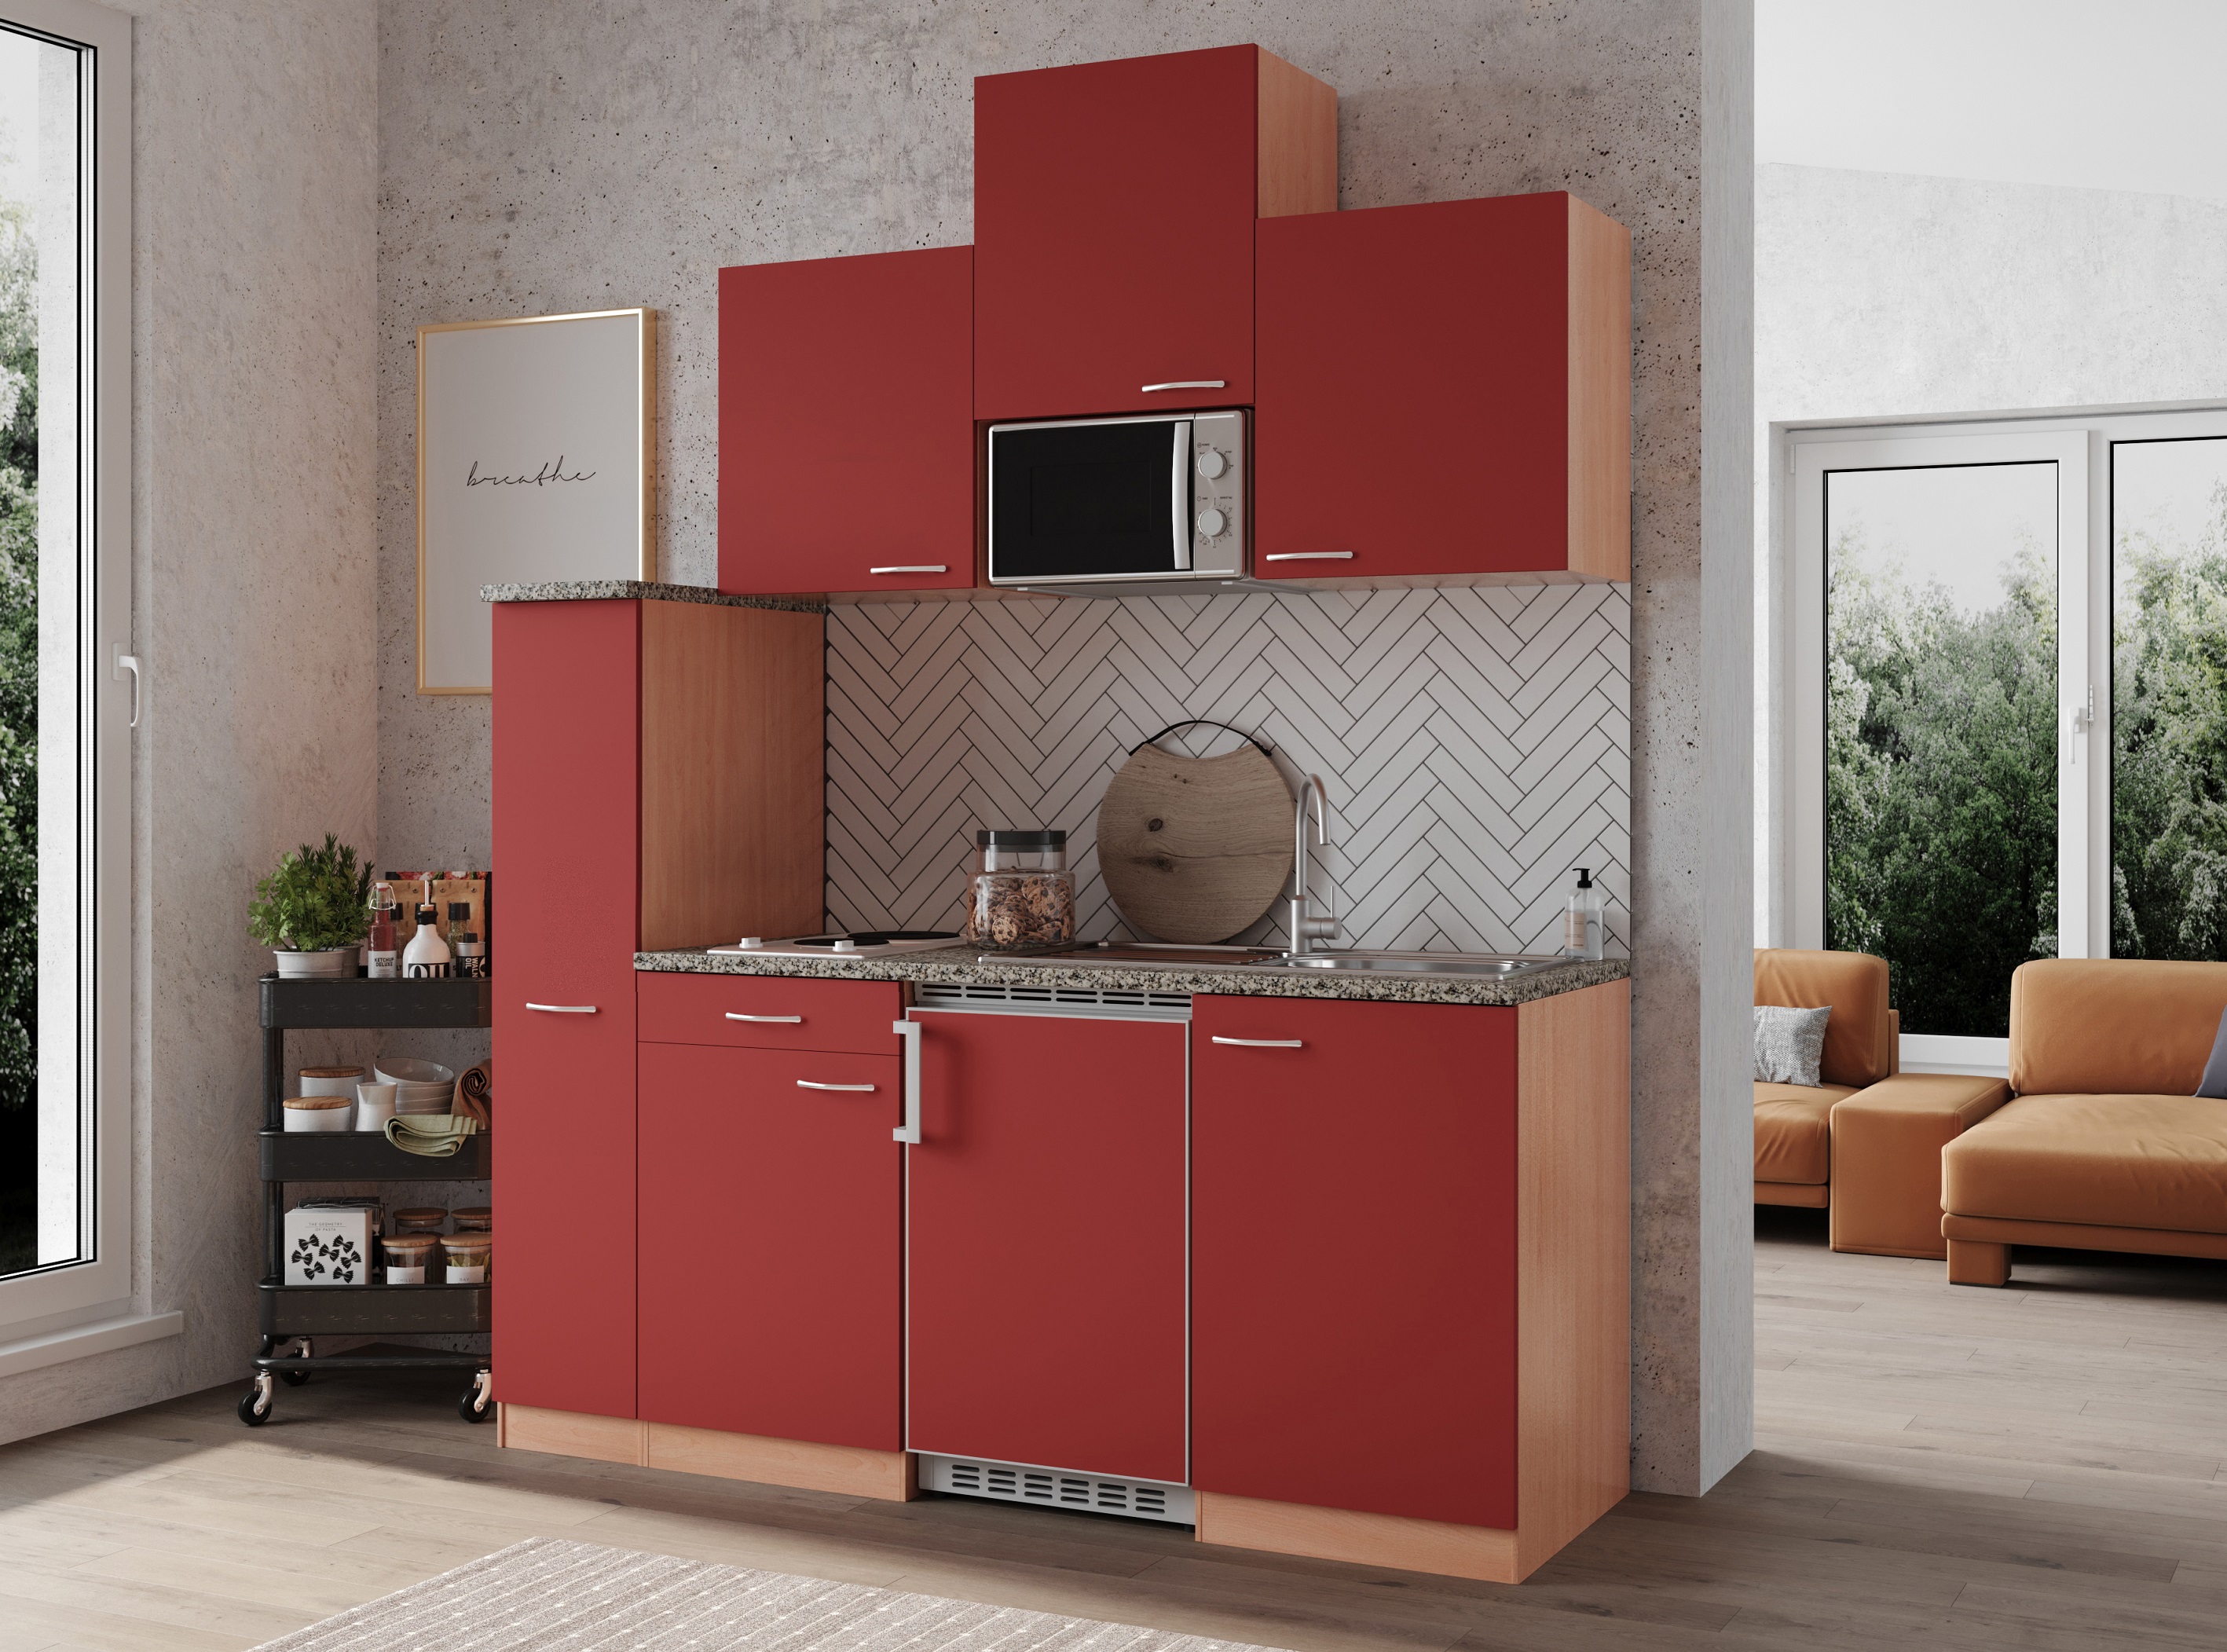 Küche Miniküche Singleküche Küchenzeile Einbau Buche Rot Gerda 180 cm Respekta